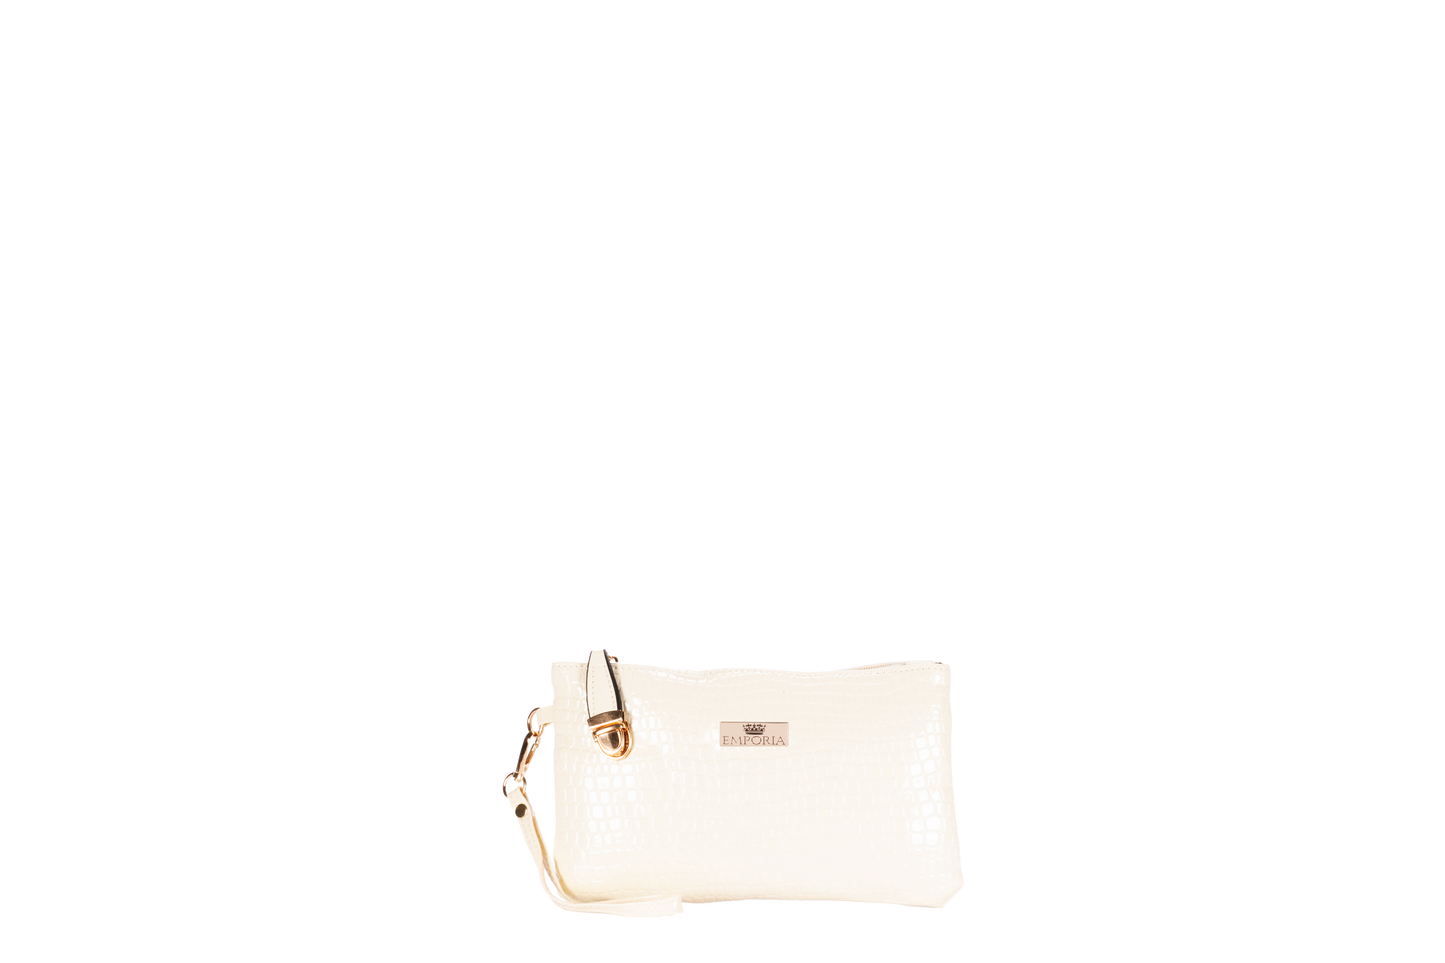 Emporia set de 5 bolsos + REGALO de set de manicura en beige claro